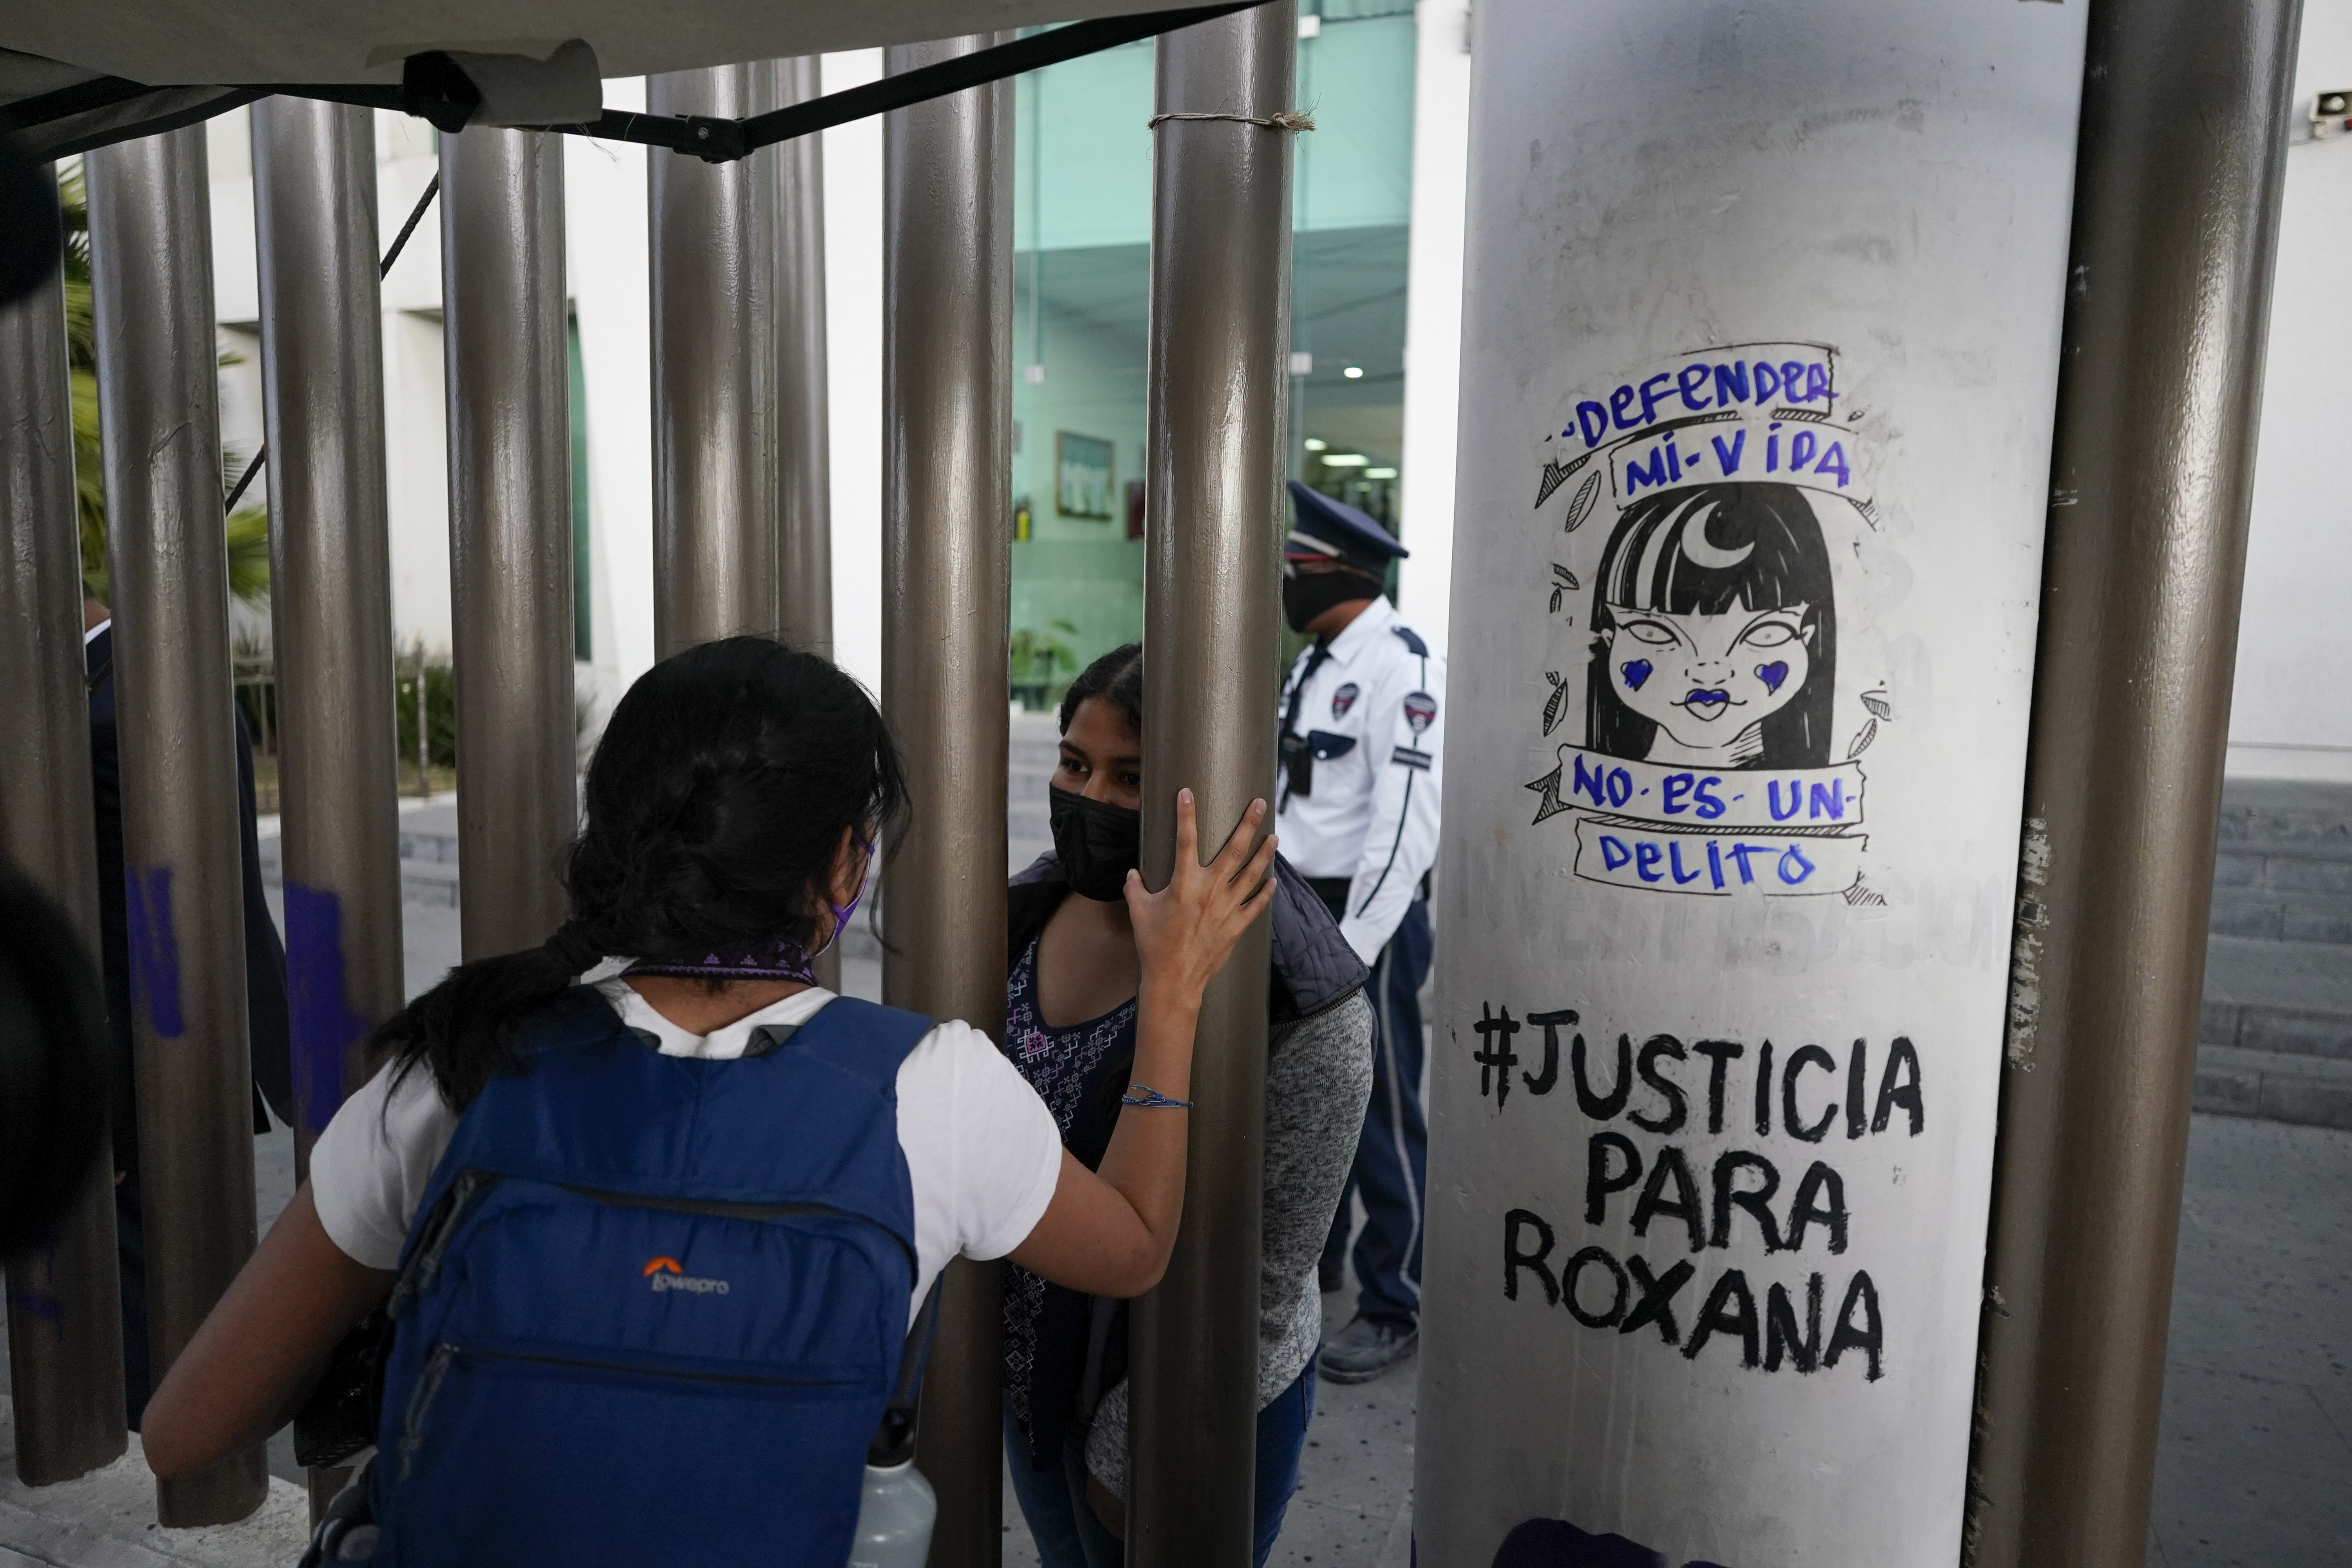 Archivo/Roxana Ruiz, detrás de la reja, habla desde el interior del complejo de la corte el día de su audiencia en que es acusada de matar a su agresor, en Chimalhuacán (AP Foto/Eduardo Verdugo)